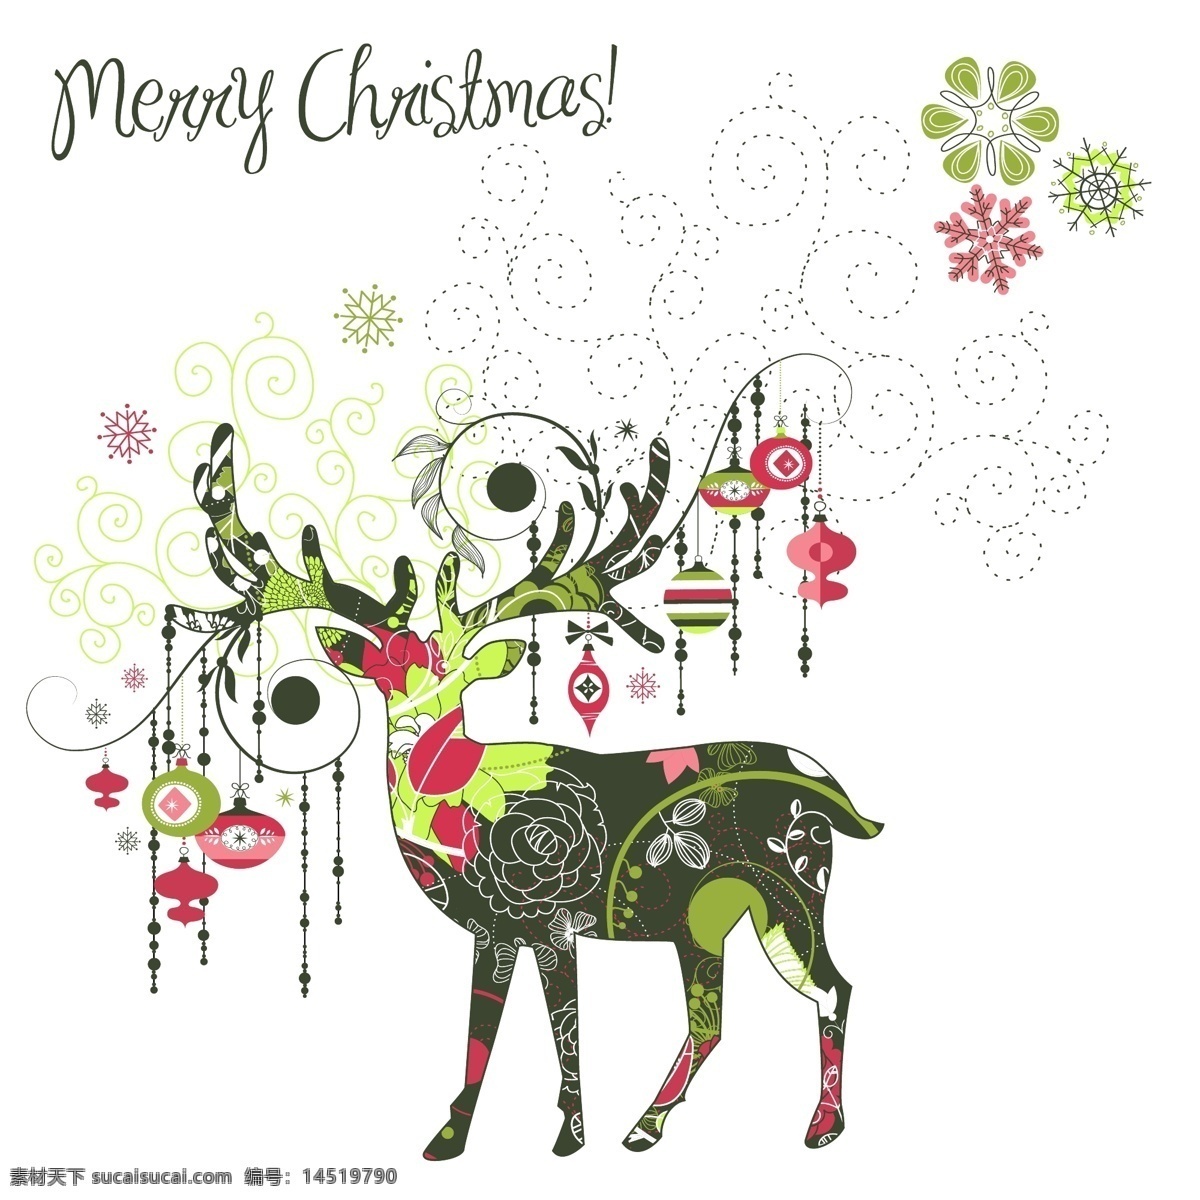 圣诞 鹿 麋鹿 手绘 圣诞节 圣诞鹿 圣诞鹿手绘 麋鹿手绘 圣诞字体设计 圣诞字体 手绘花 圣诞挂坠